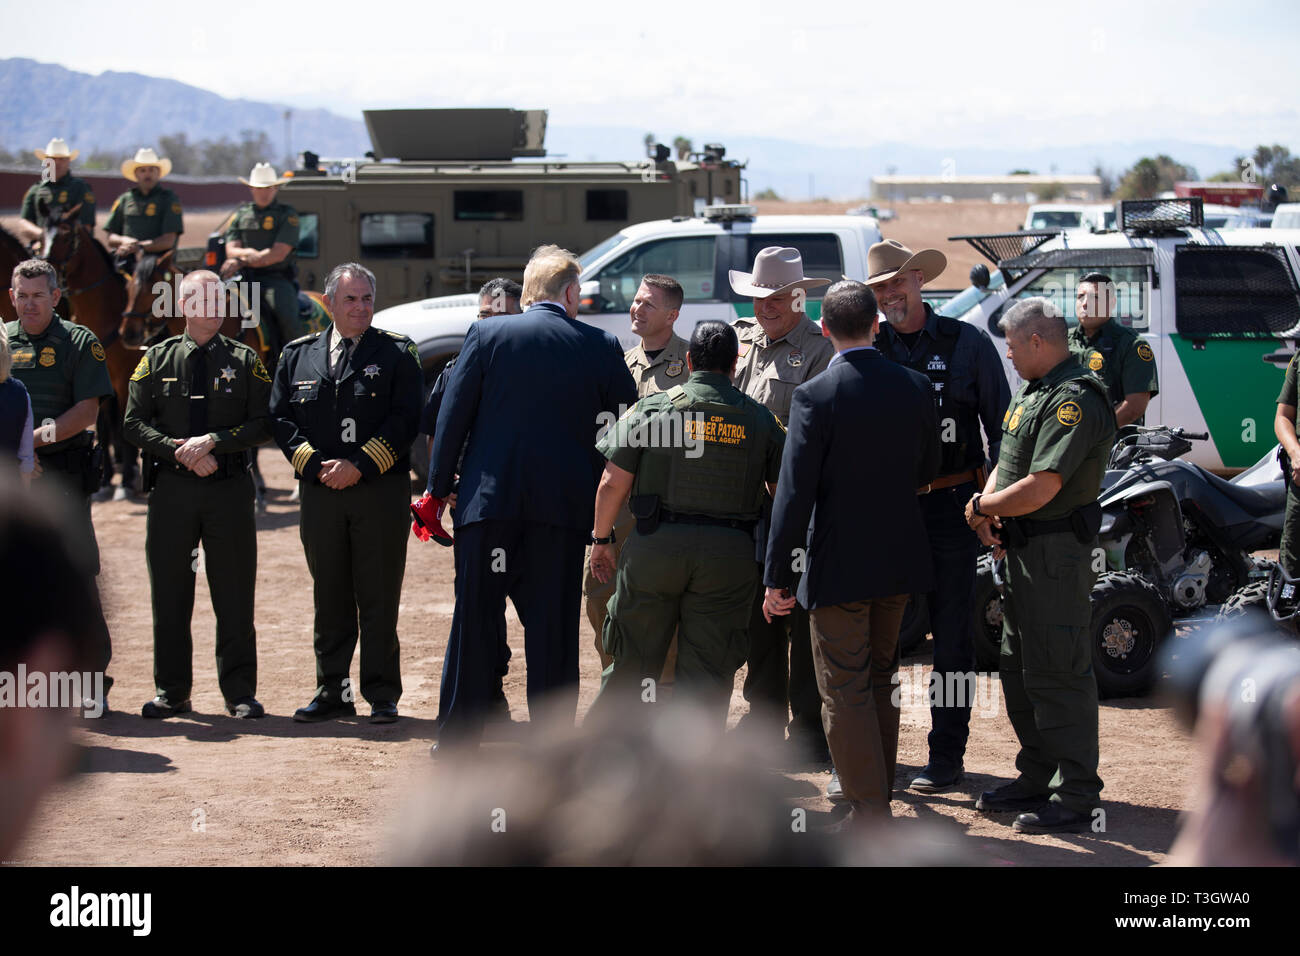 Us-Präsident Donald Trump schüttelt Hände mit CBP-Agenten und Beamten während eines Besuchs in Calexico, Kalifornien an der Grenze patrouillieren Calexico Station April 5, 2019. Trump besuchte den Abschnitt der Wand bei Calexico, war Teil eines Projekts unter Präsident Obama gestartet. Stockfoto